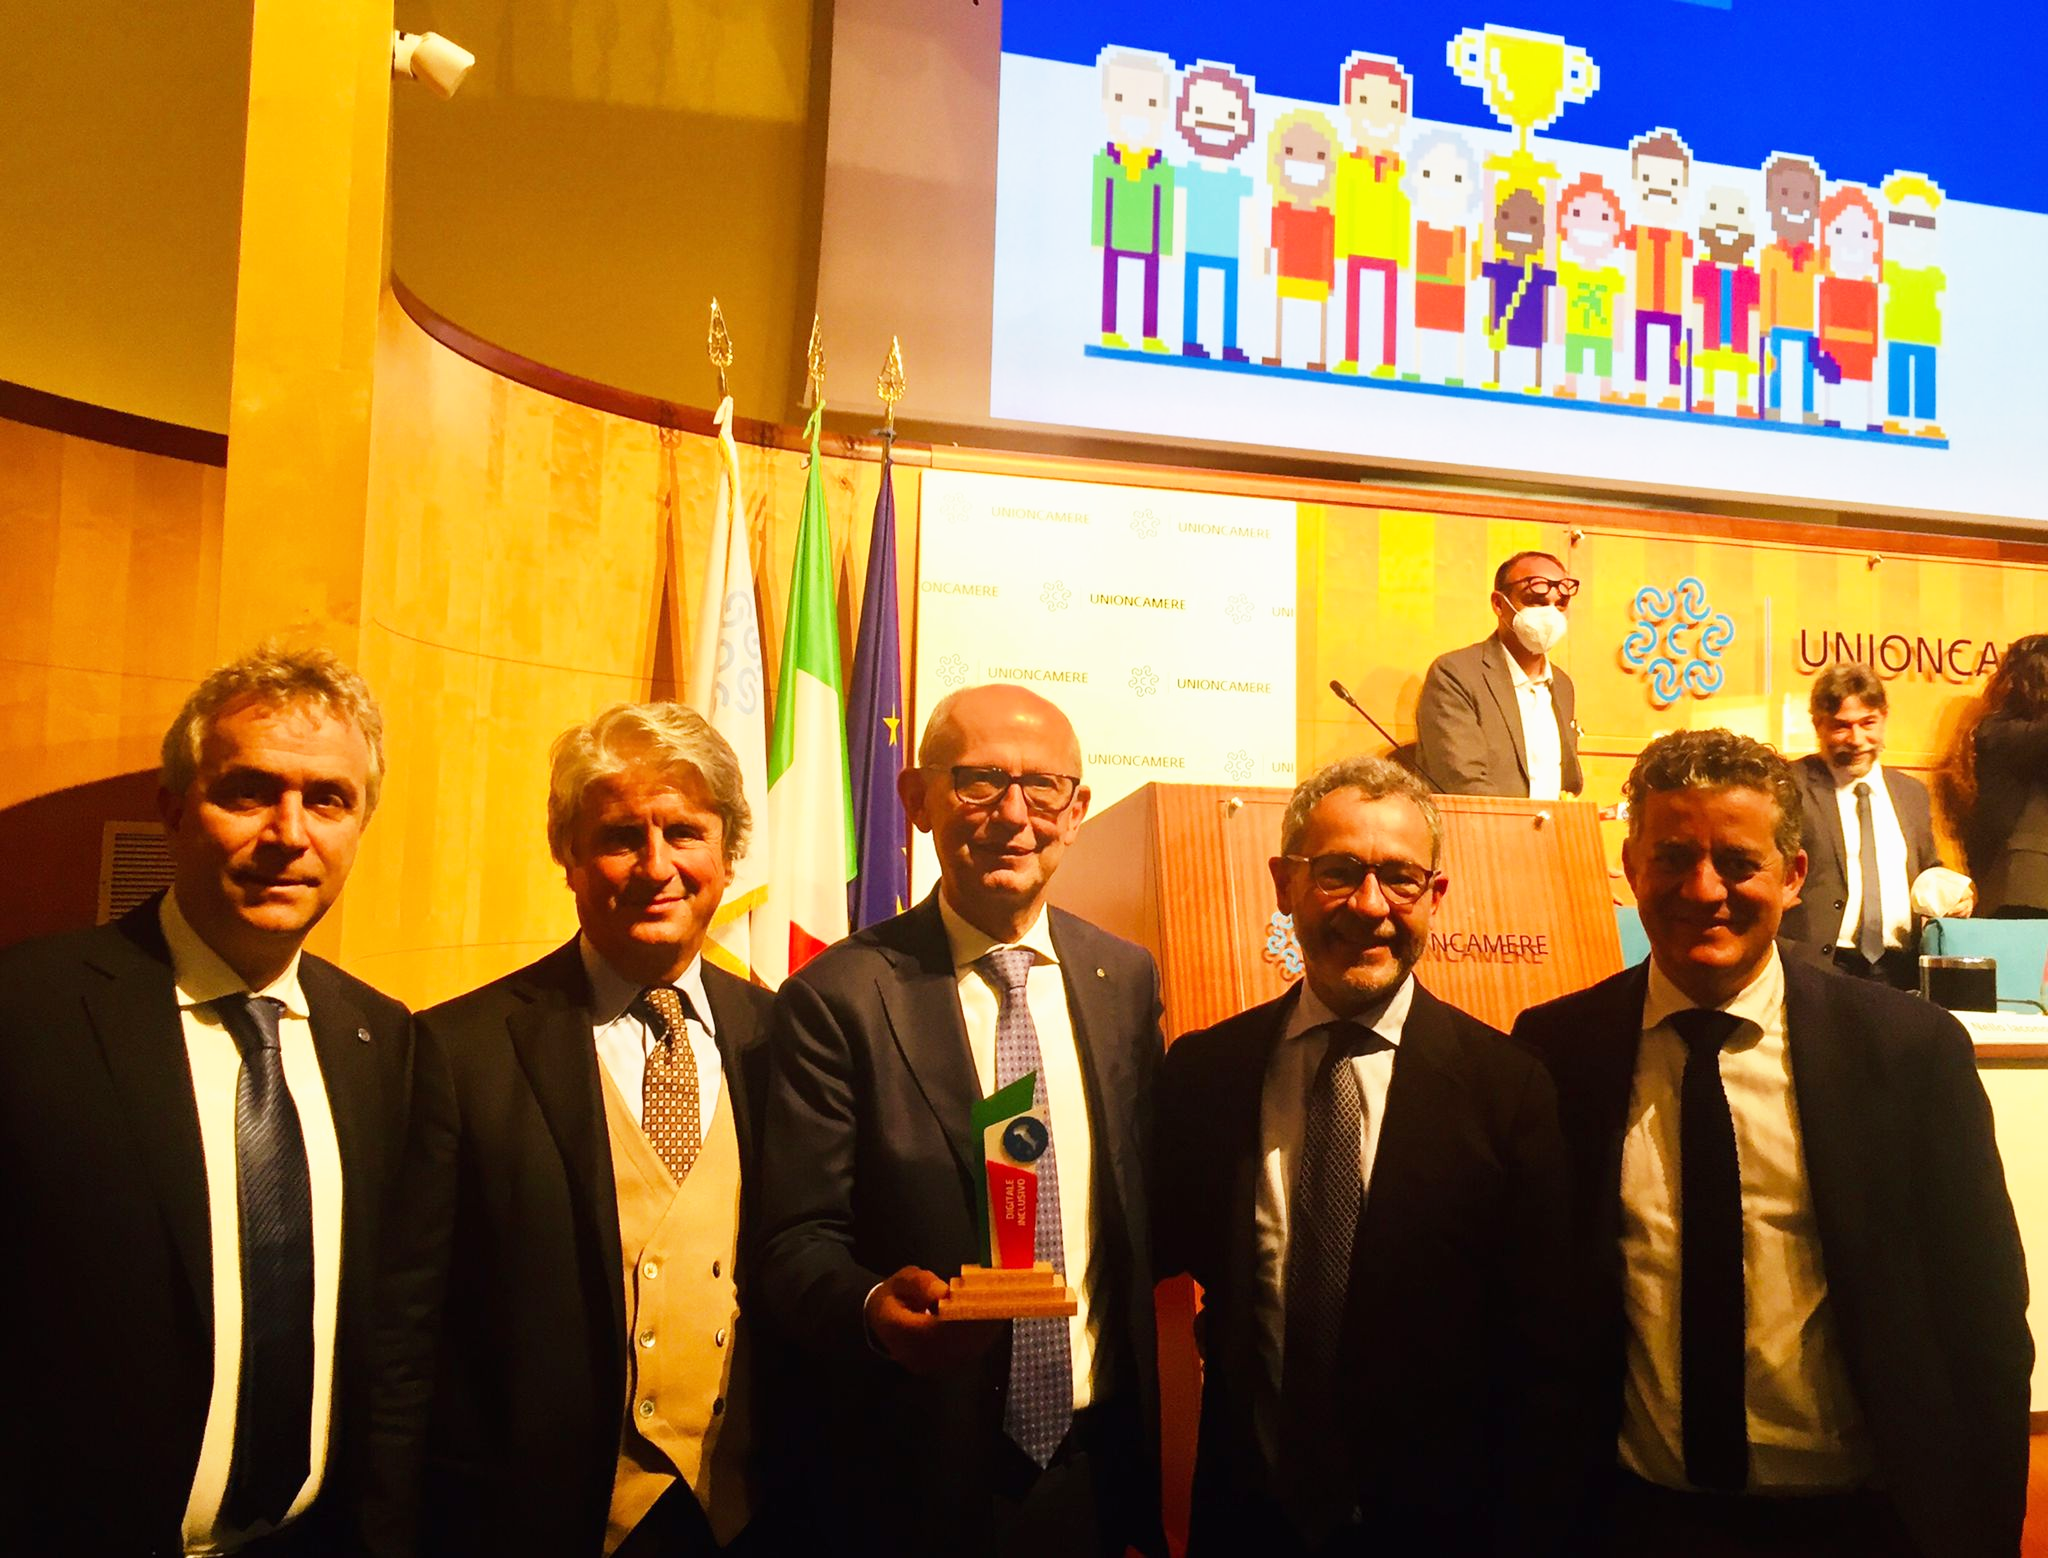 L'assessore Ciuoffo durante la premiazione - fonte Regione Toscana